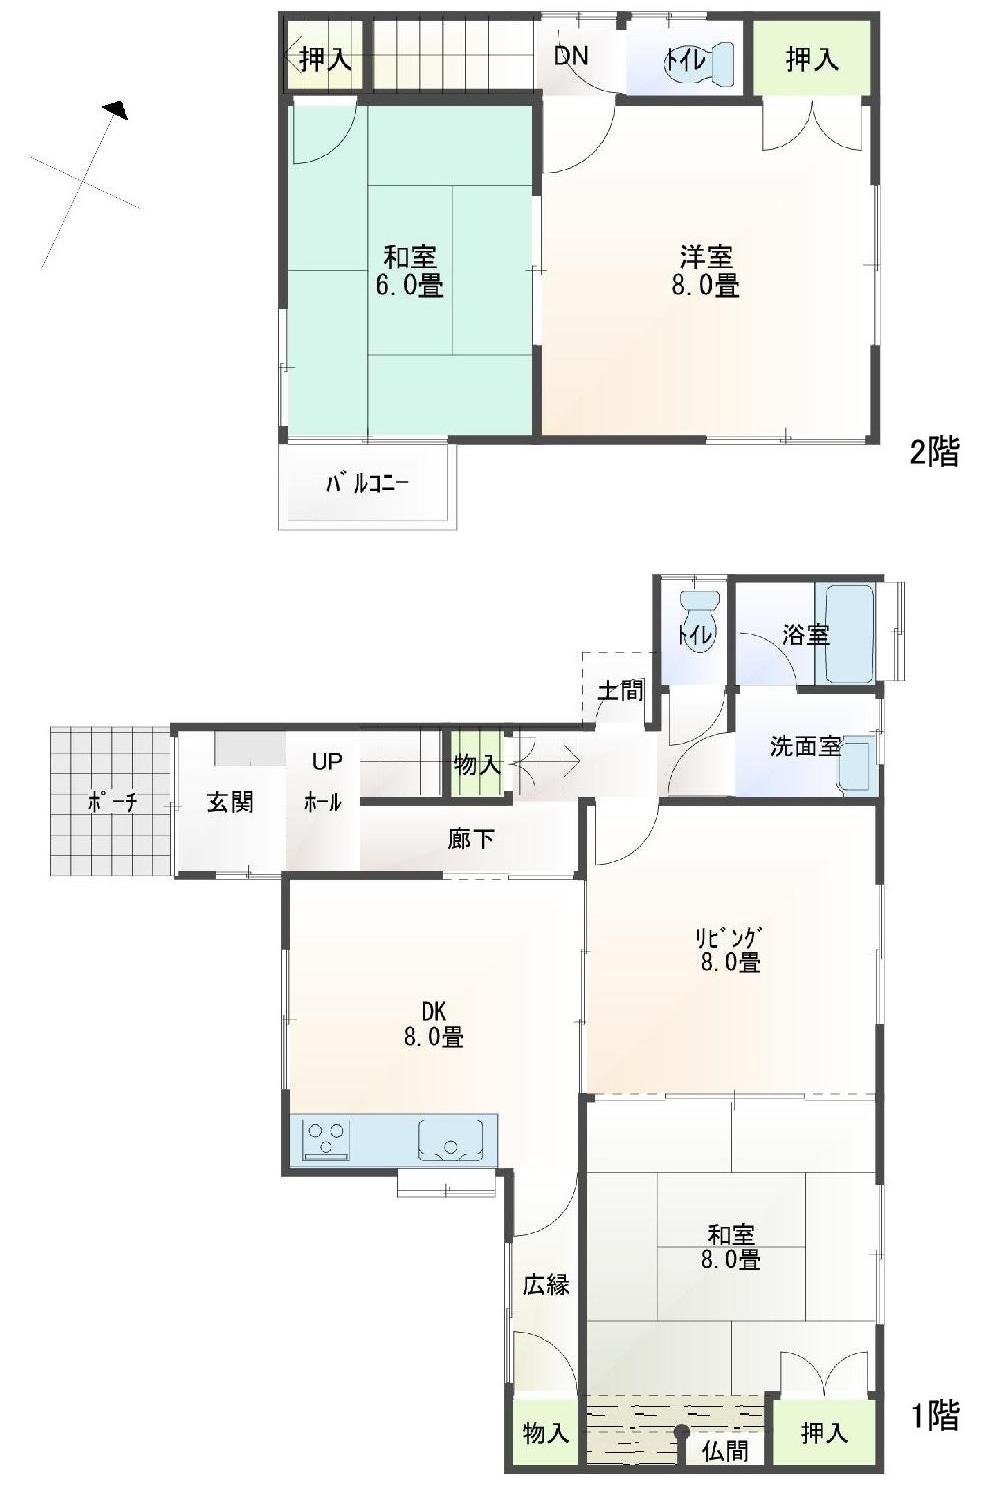 Floor plan. 12.8 million yen, 4DK, Land area 444.55 sq m , Building area 101.08 sq m